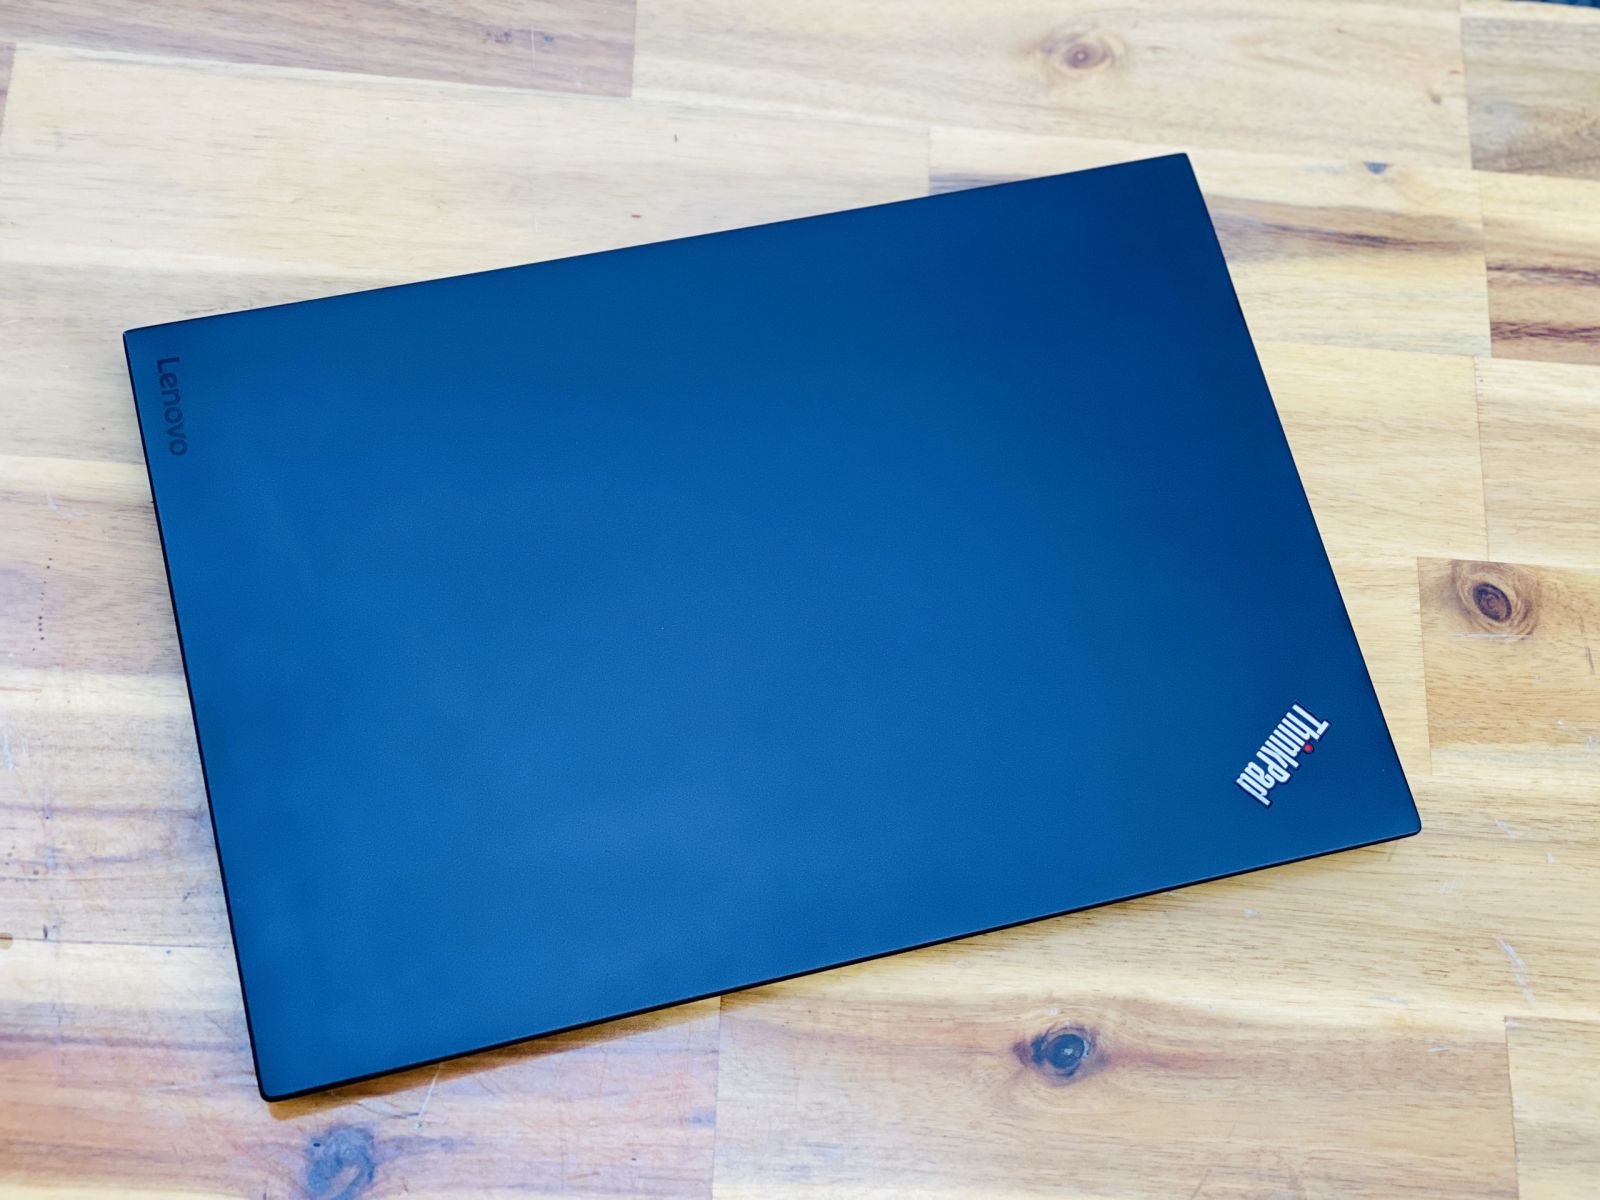 Laptop Lenovo Thinkpad X1 Carbon Gen 4, i7 6600U 8G SSD256 Đèn phím 99% Zin Giá rẻ4